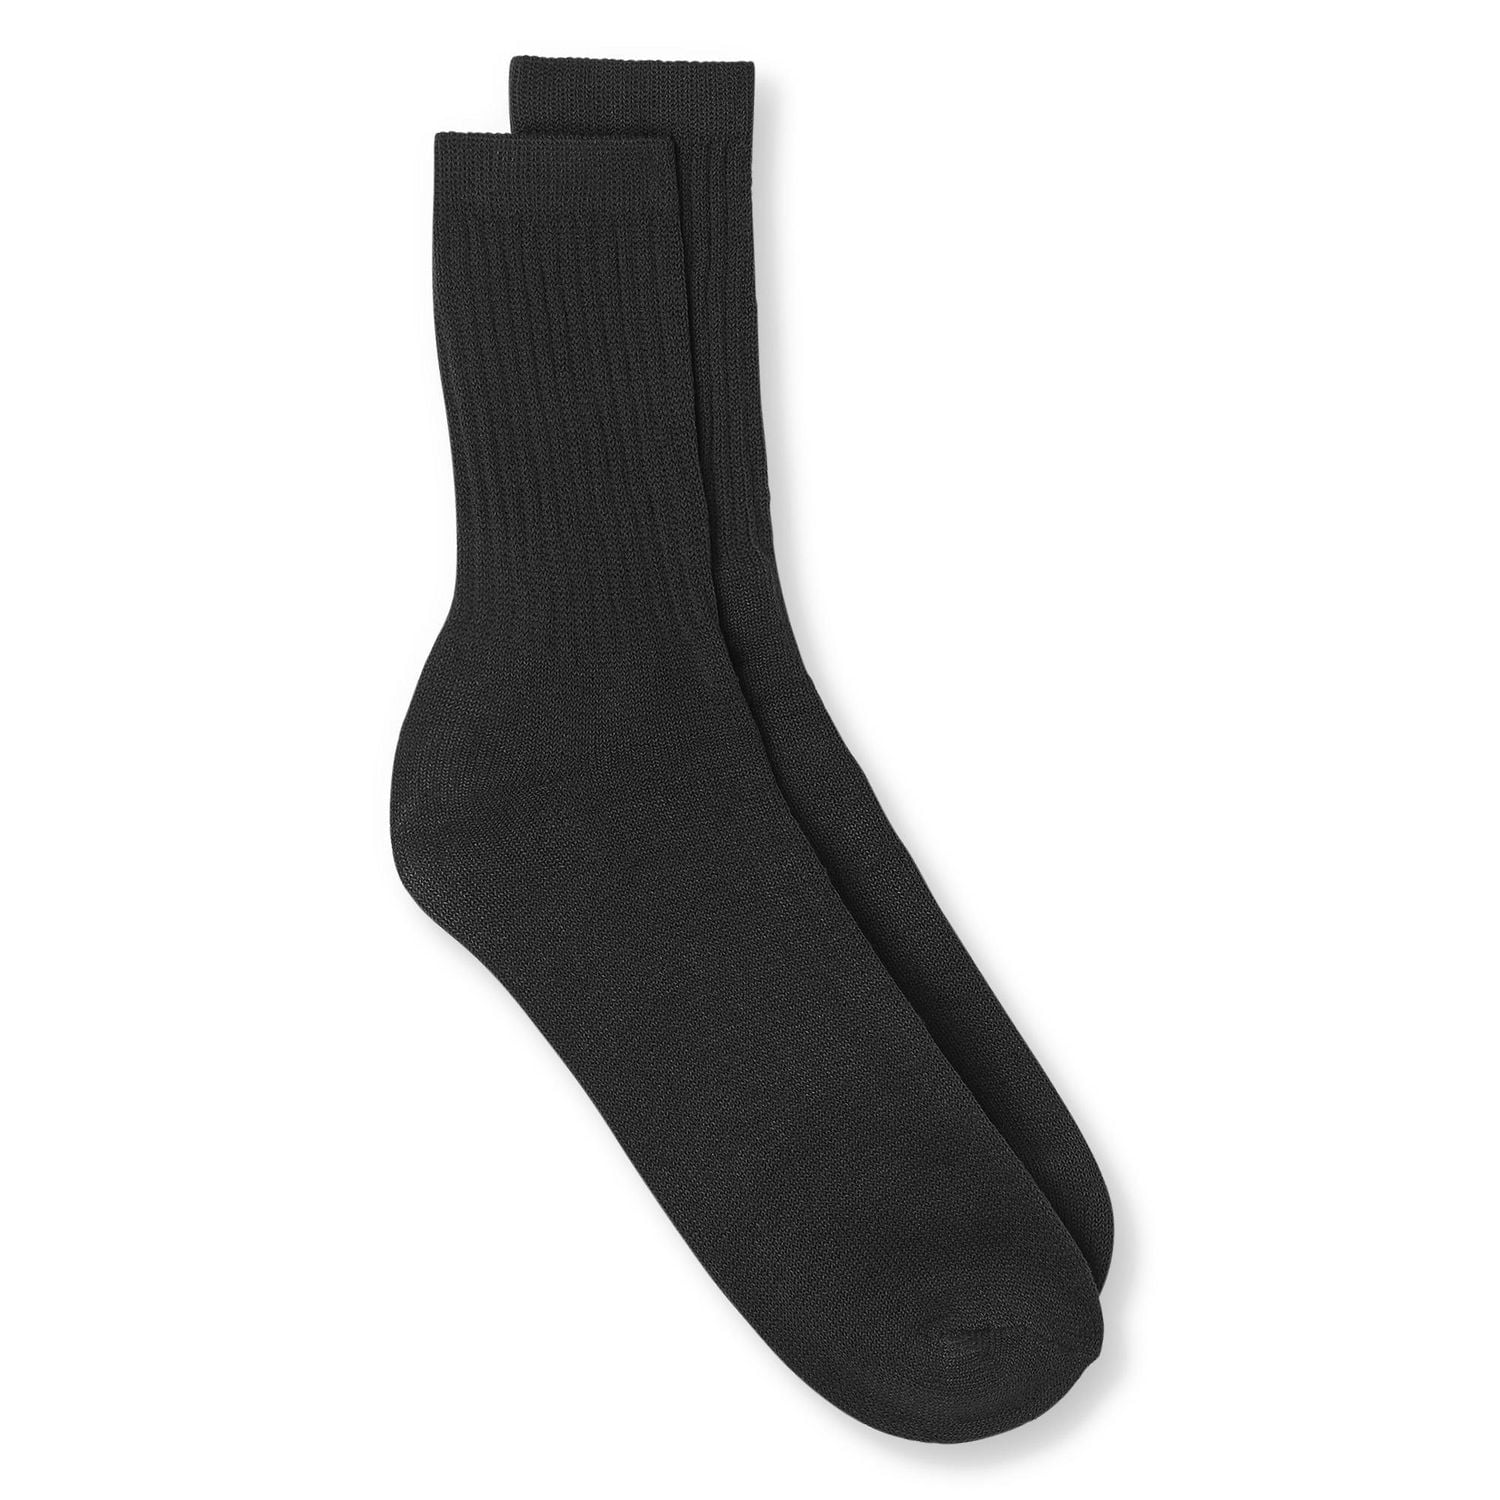 Plain Black Socks (1 Pair)